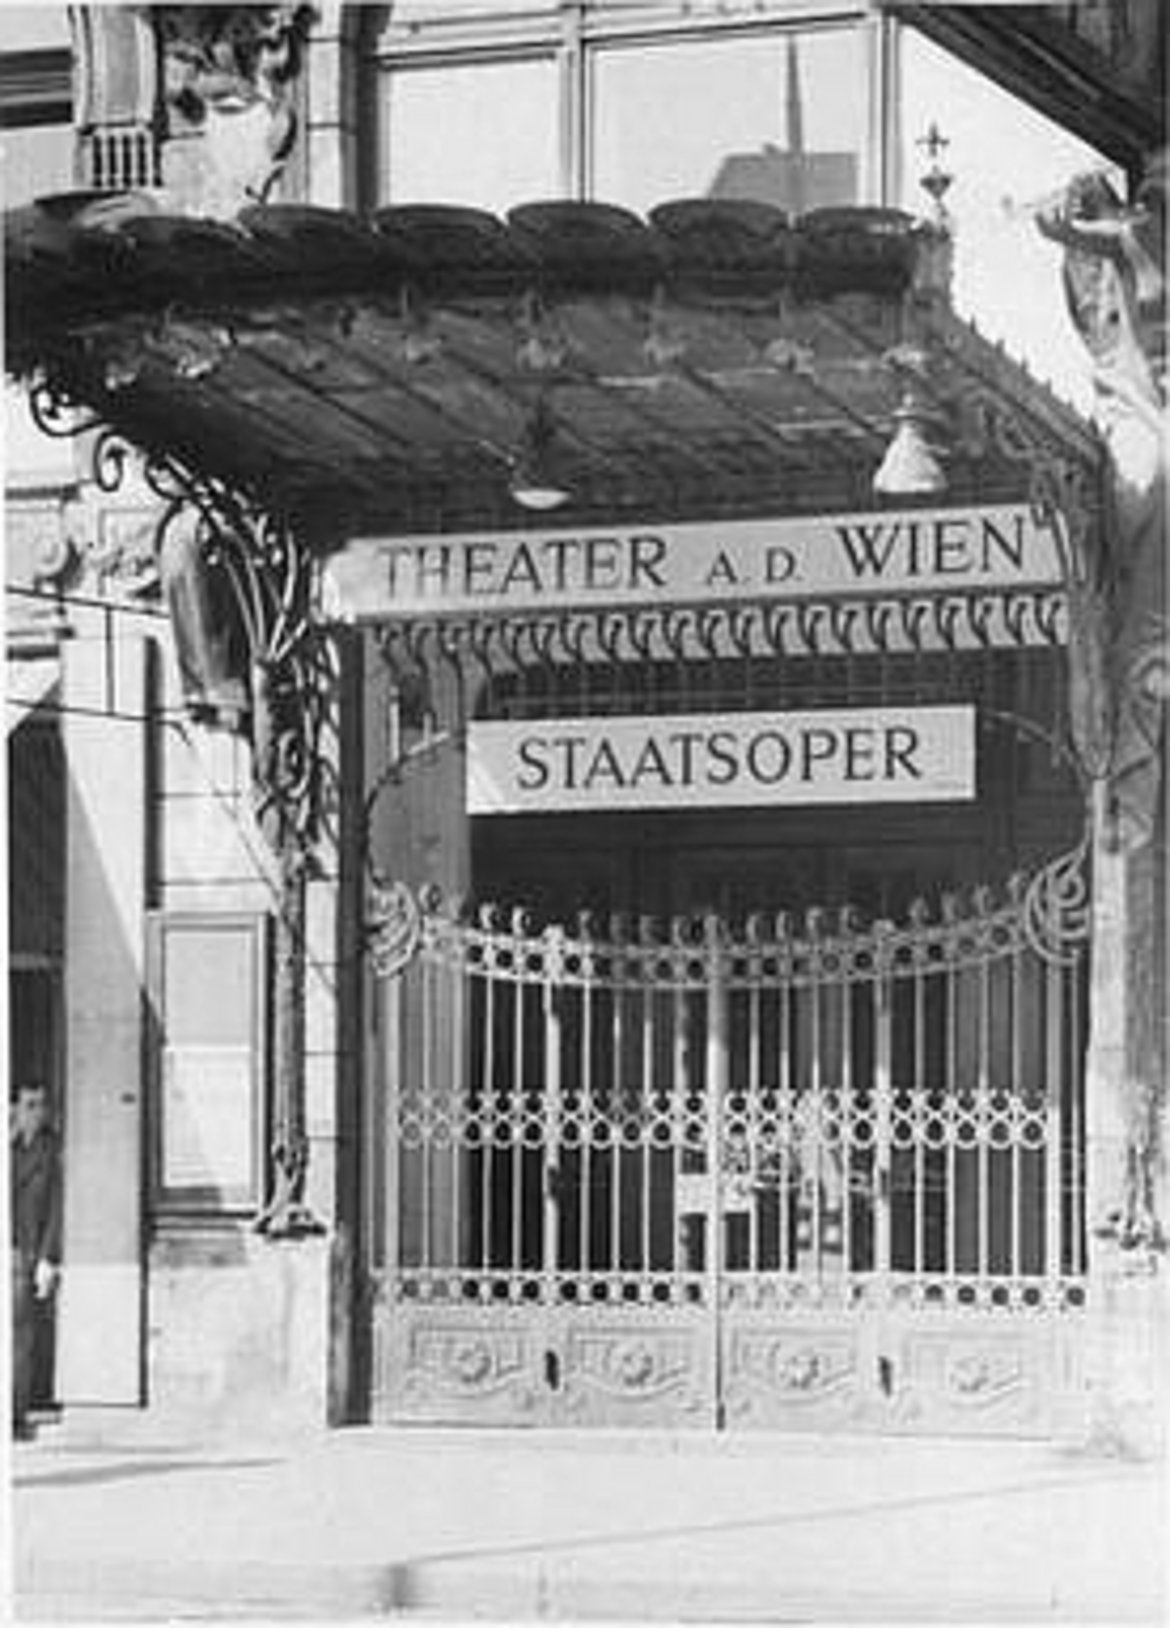 Das Eingangsgittertor des Theaters mit zwei Schildern: "Theater a. d. Wien" und "Staatsoper"